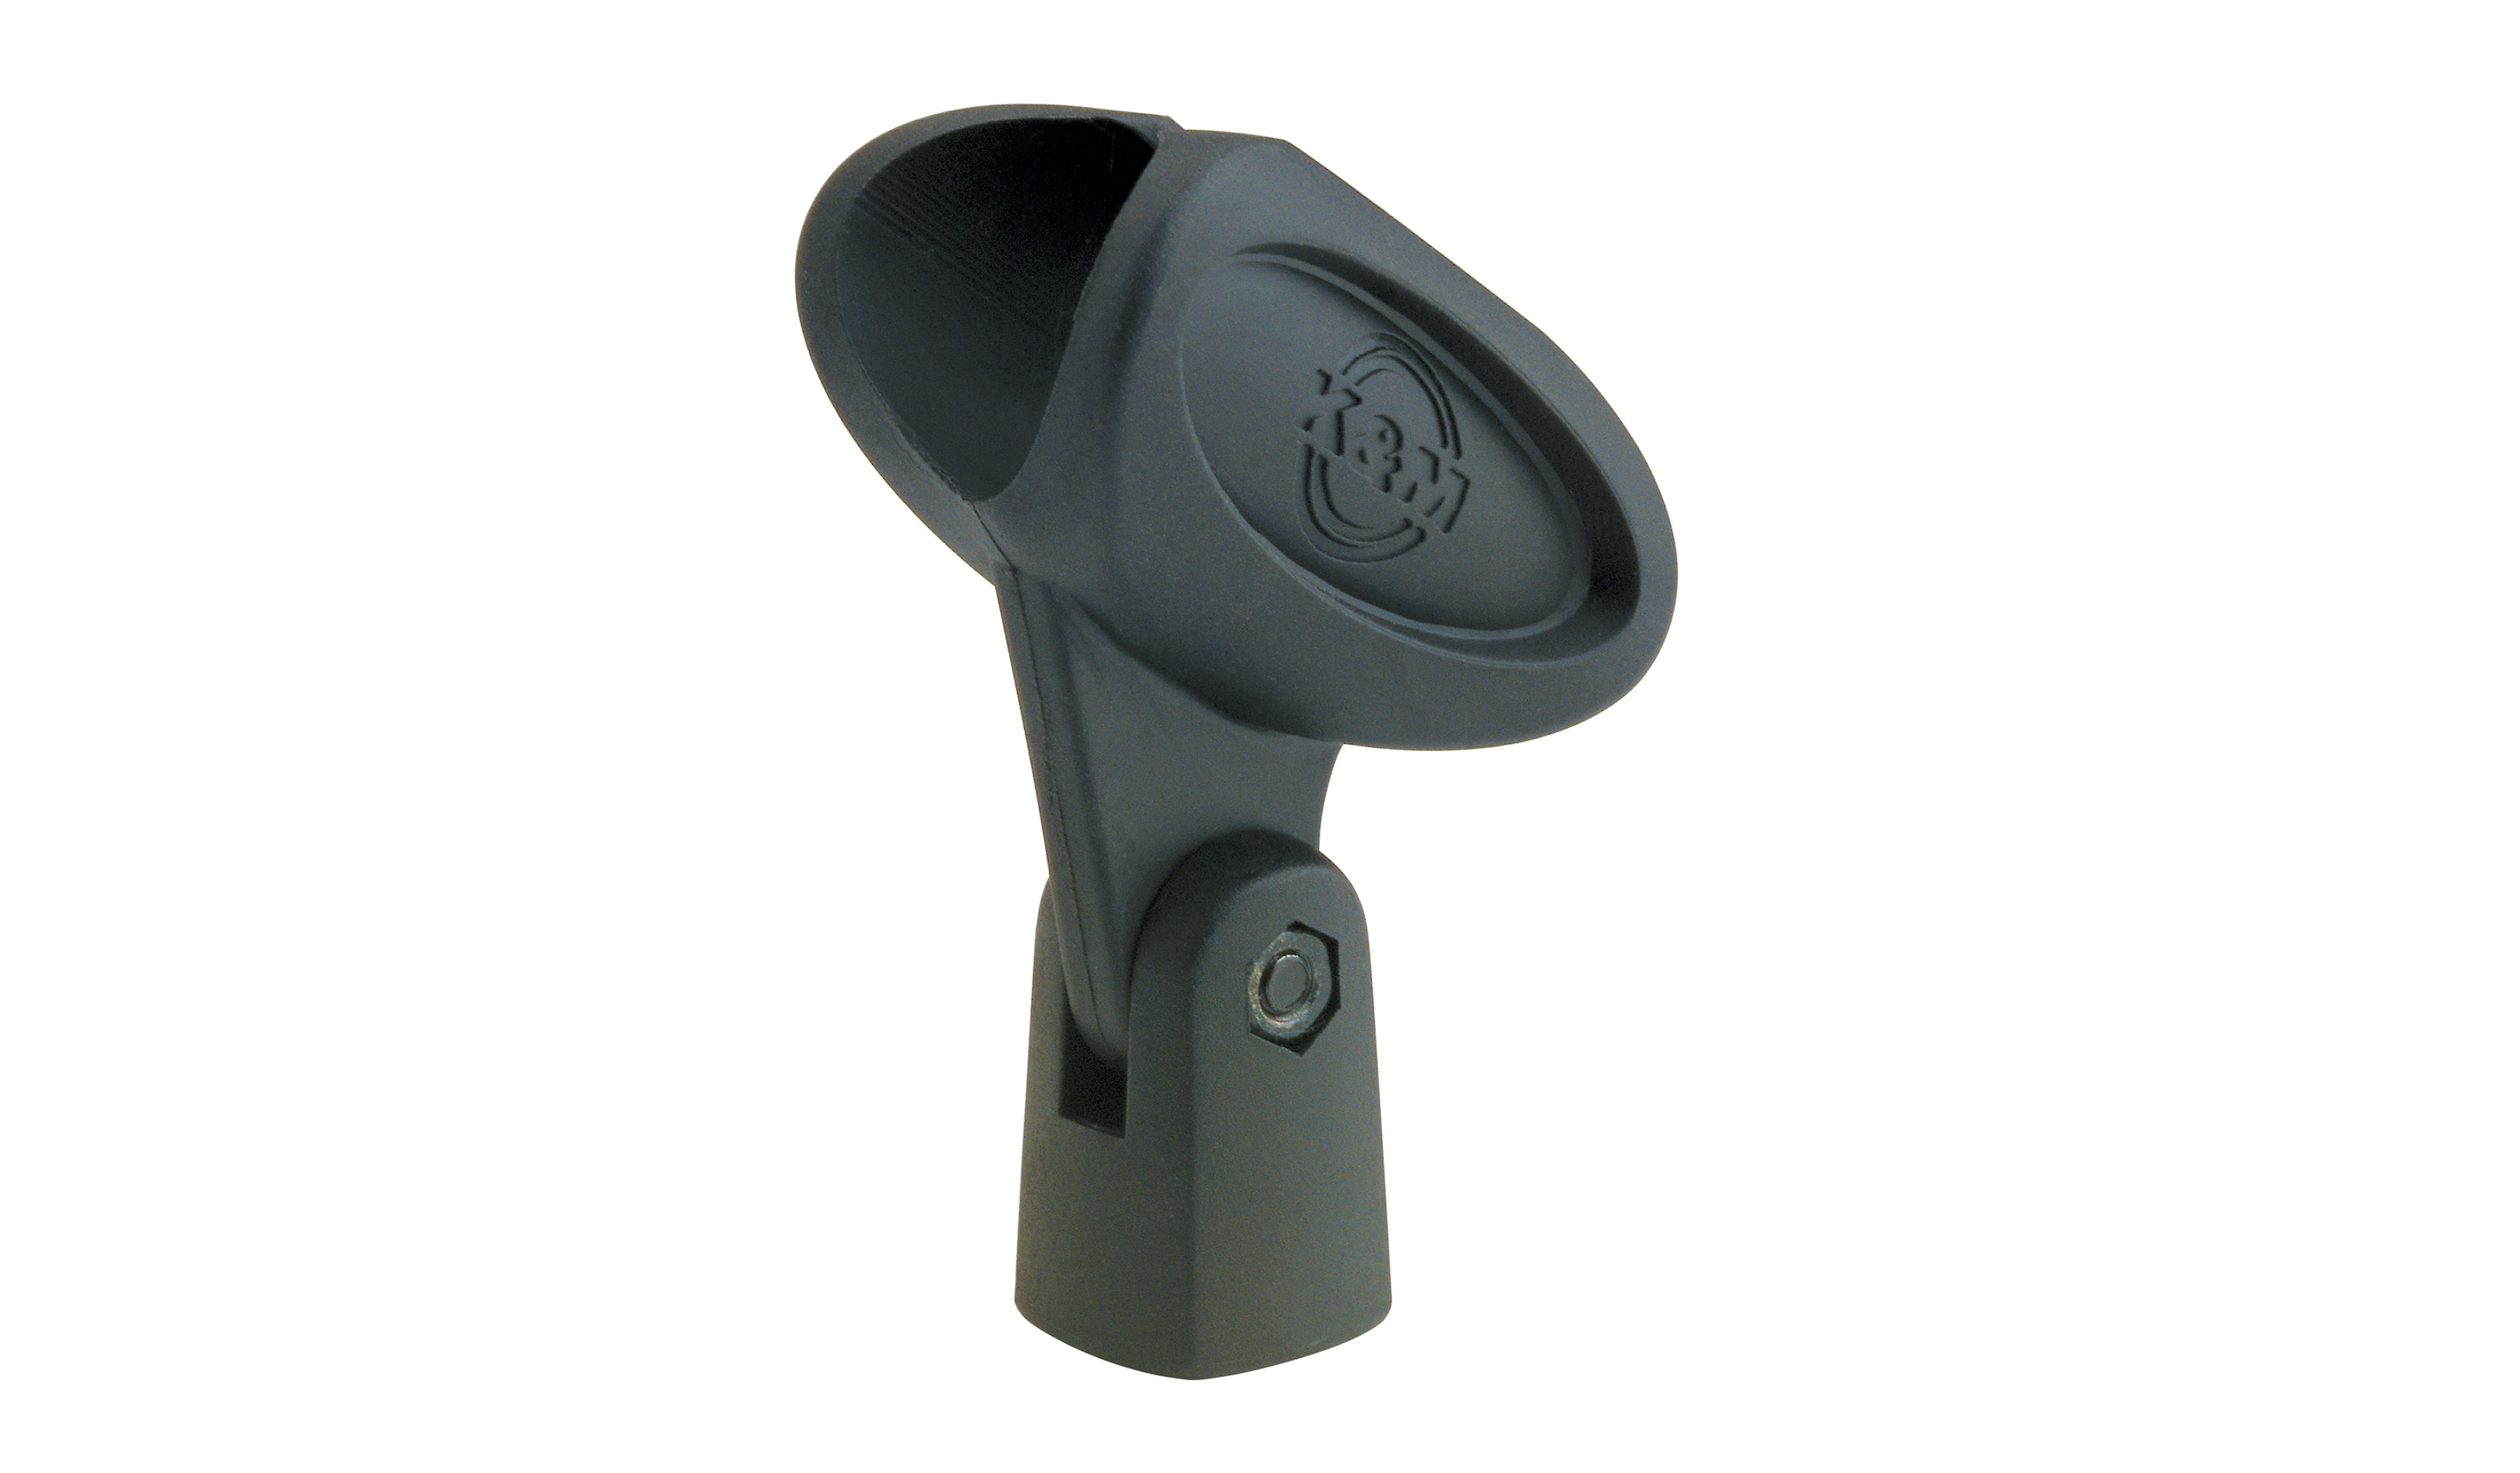 Mikrofon Mikrofonstativzubehör Flexible Kunststoffklemme Cliphalterung HHYRZ9 